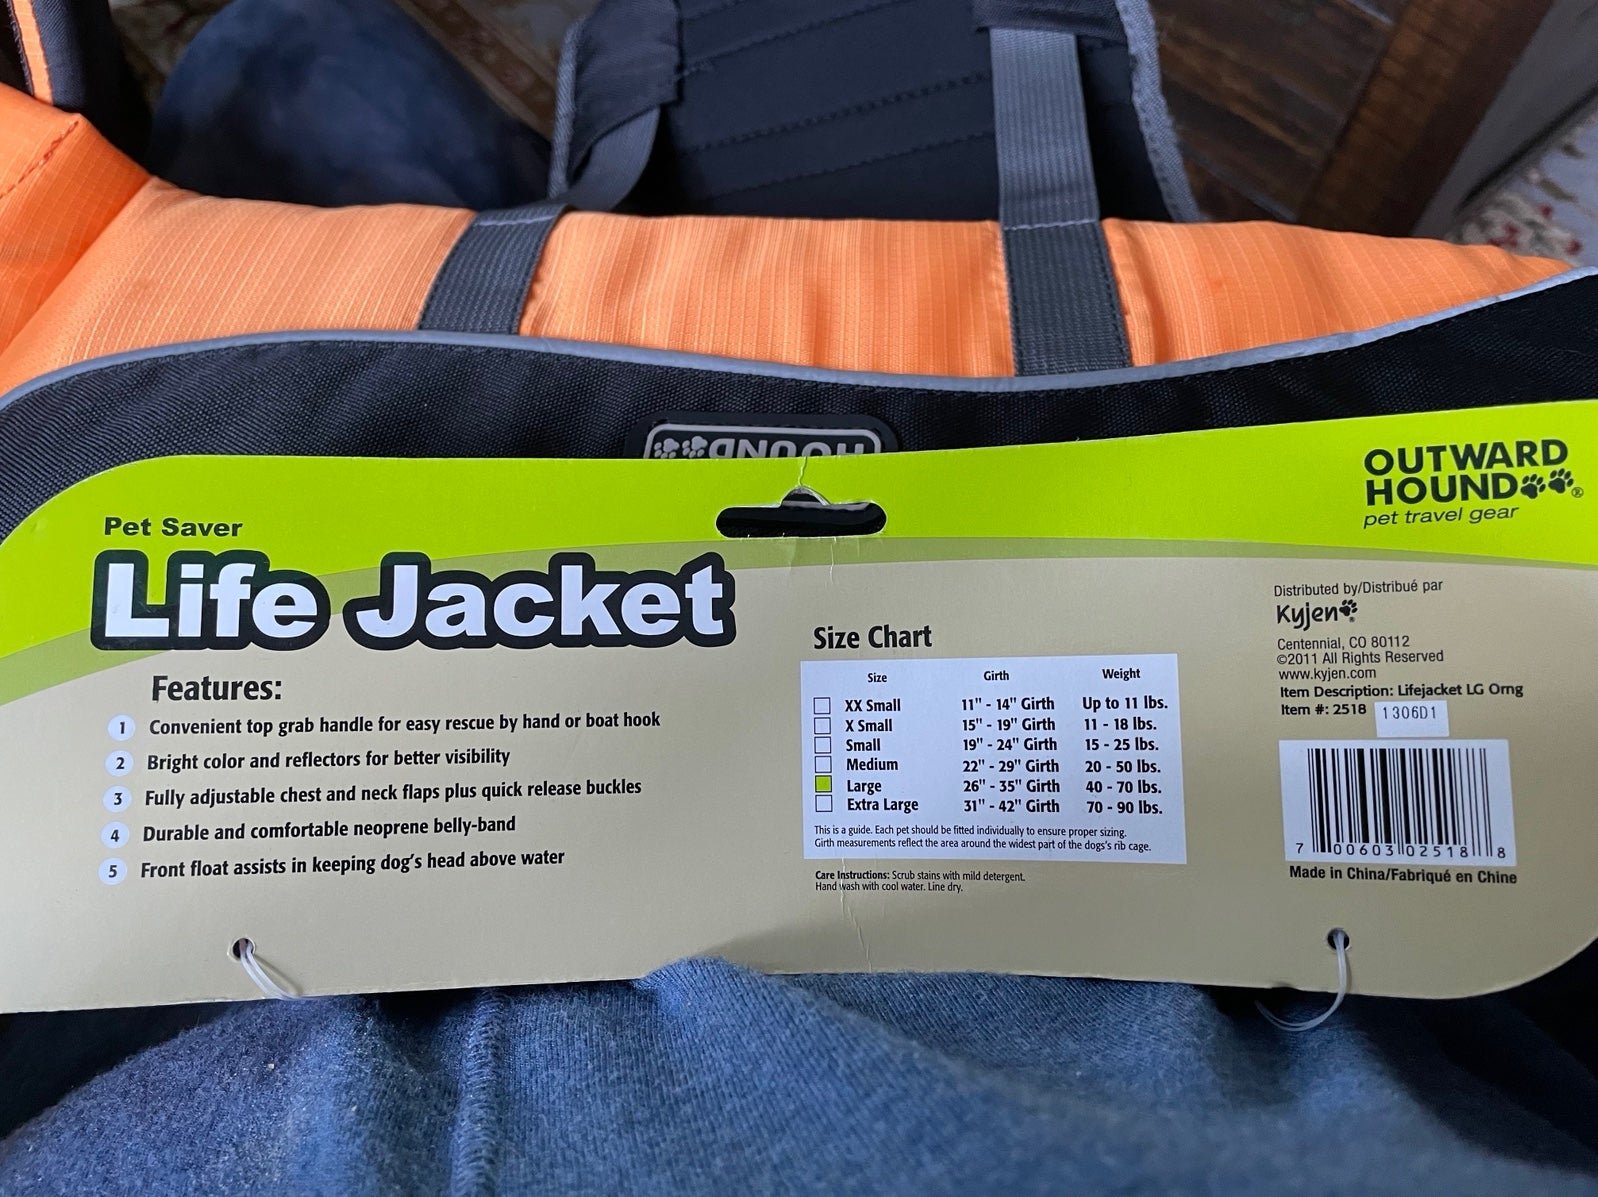 Pet Saver Outward Hound Large life jacket 9GspjRDGk